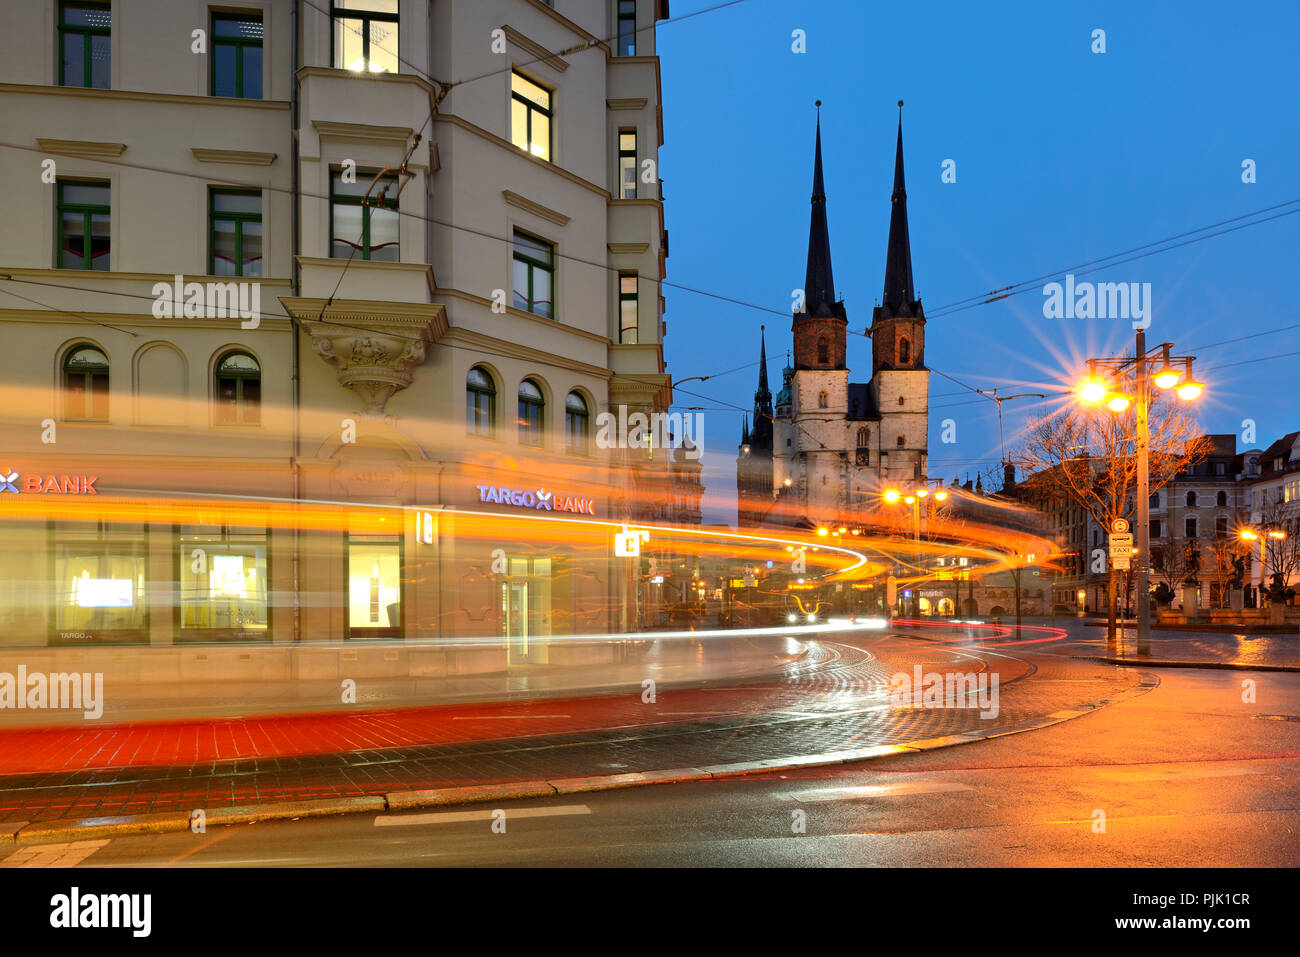 Alemania, en el Estado federado de Sajonia-Anhalt, Halle (Saale), Hallmarkt, mercado iglesia y Torre Roja, al anochecer, estelas de luz del tranvía Foto de stock